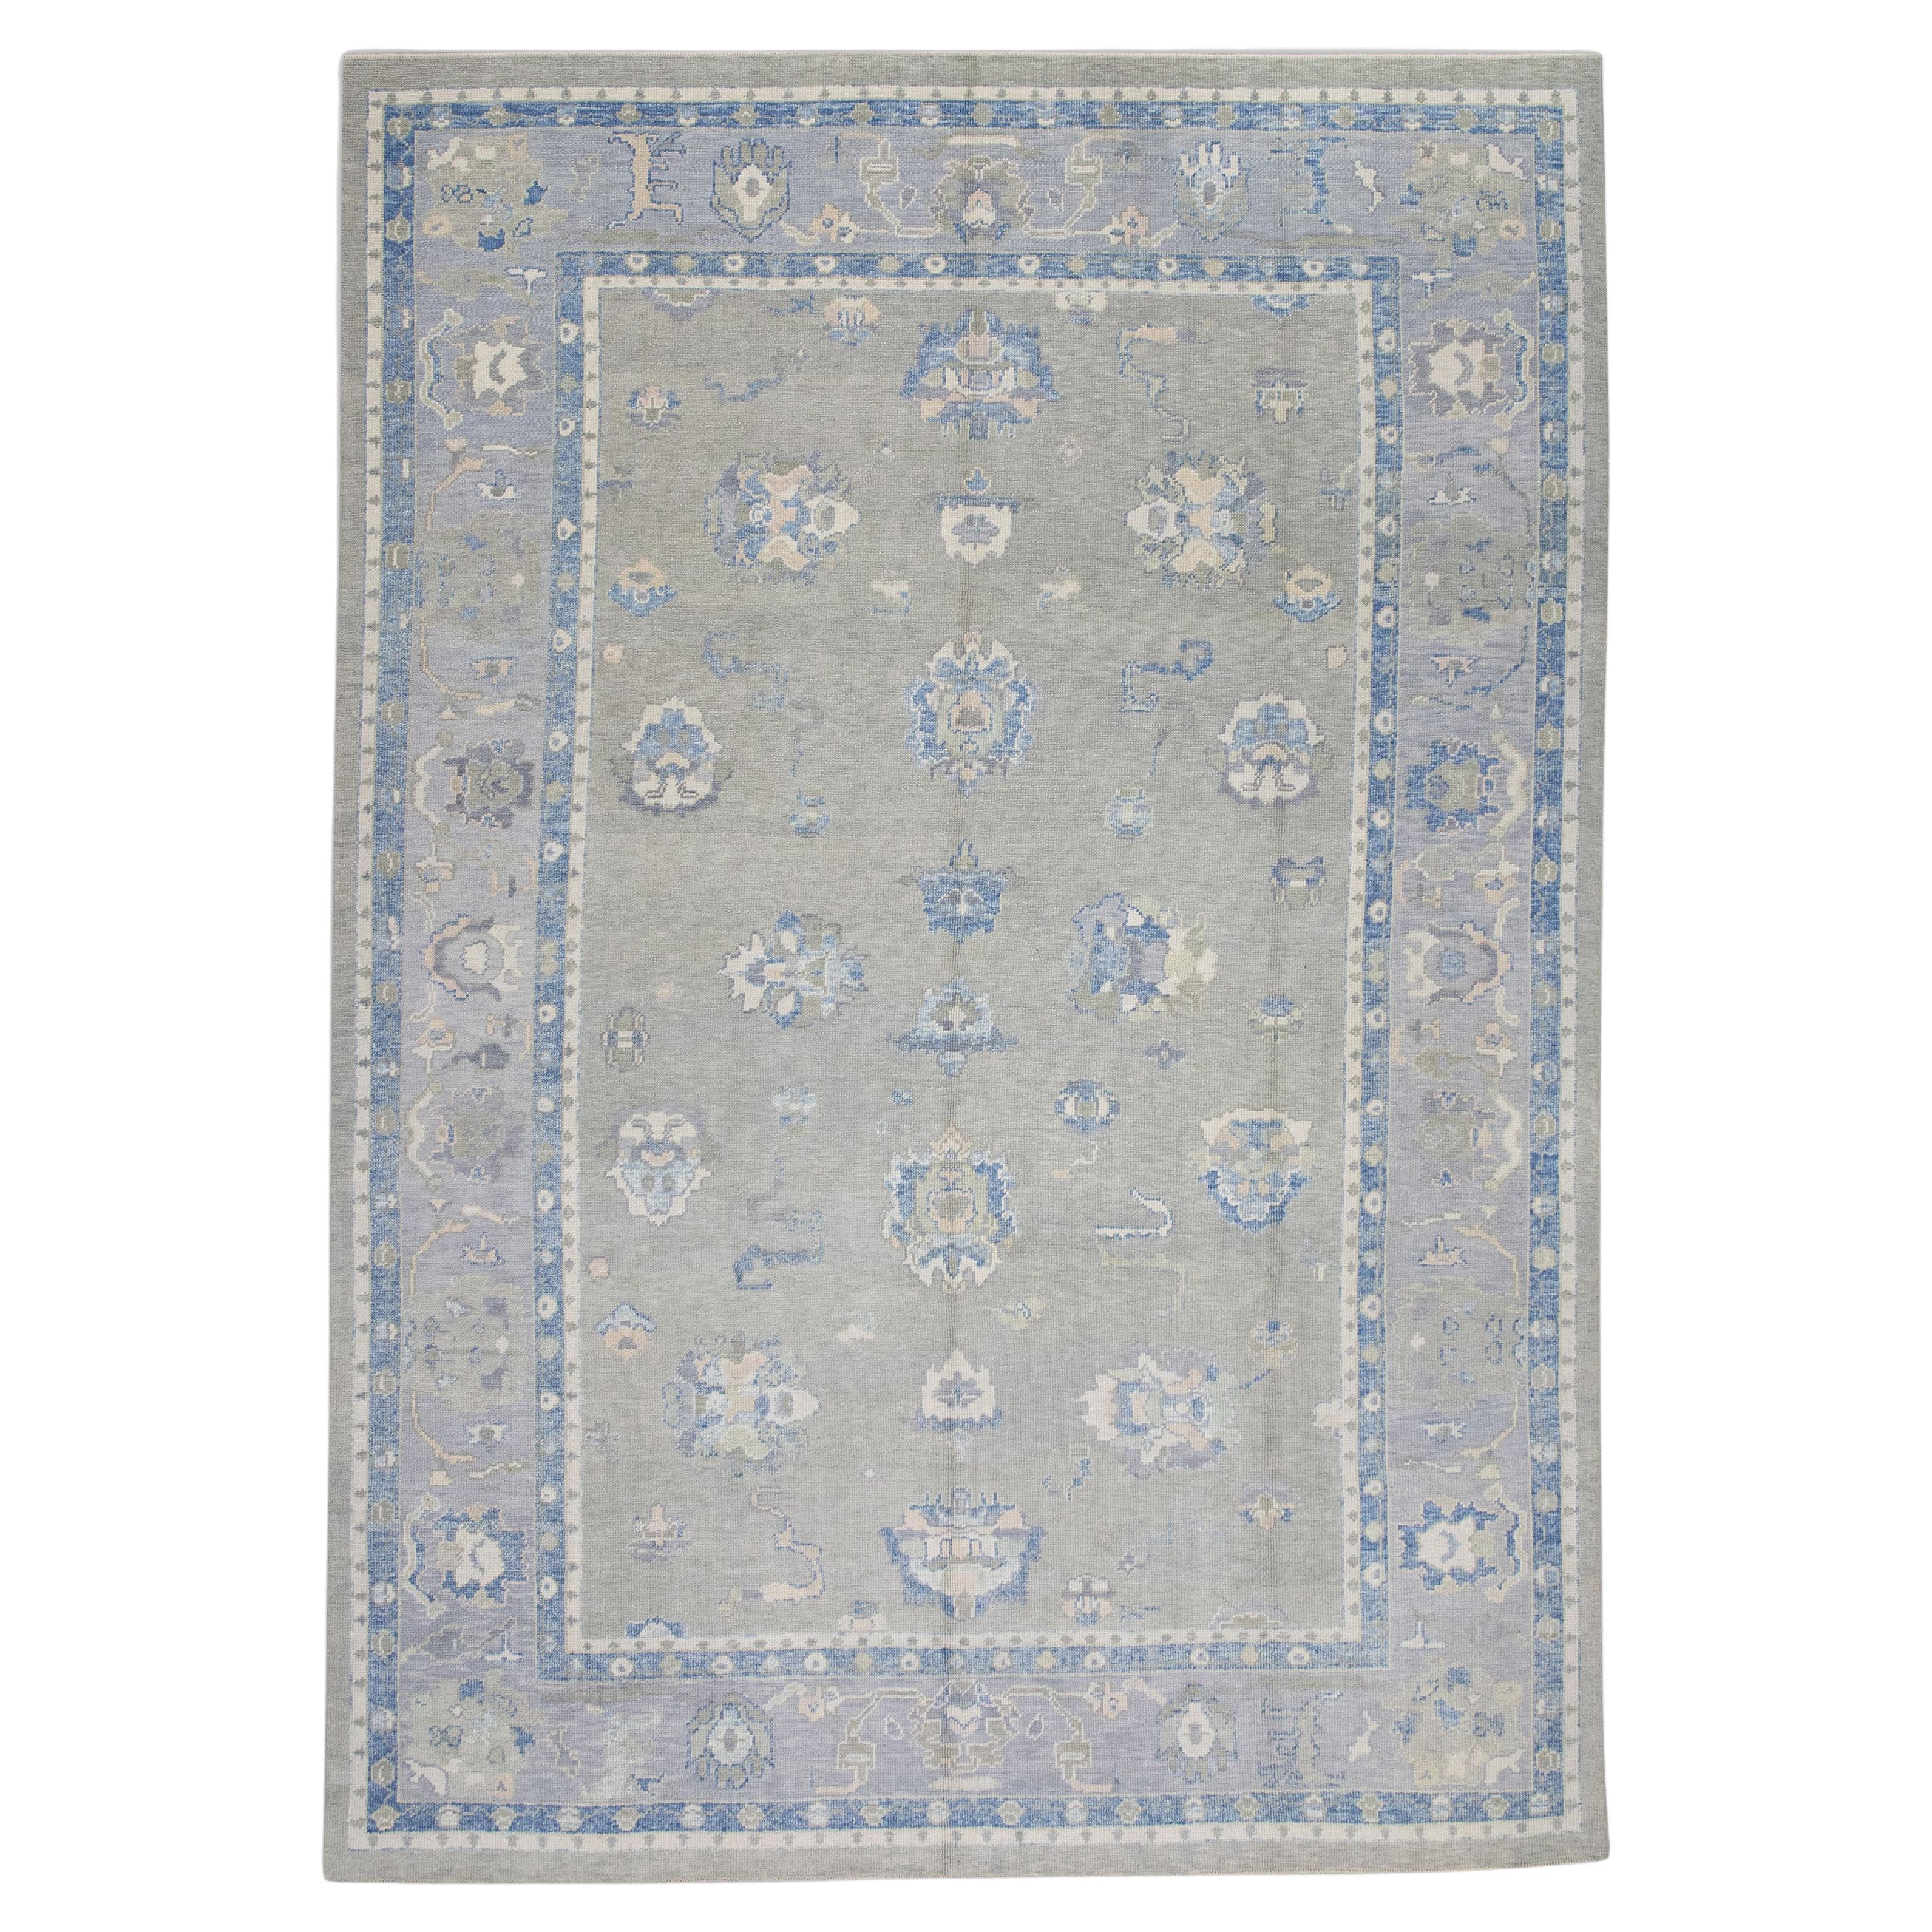 Handgewebter türkischer Oushak-Teppich aus Wolle in Blau & Grün mit Blumenmuster 9'4" X 11'8"